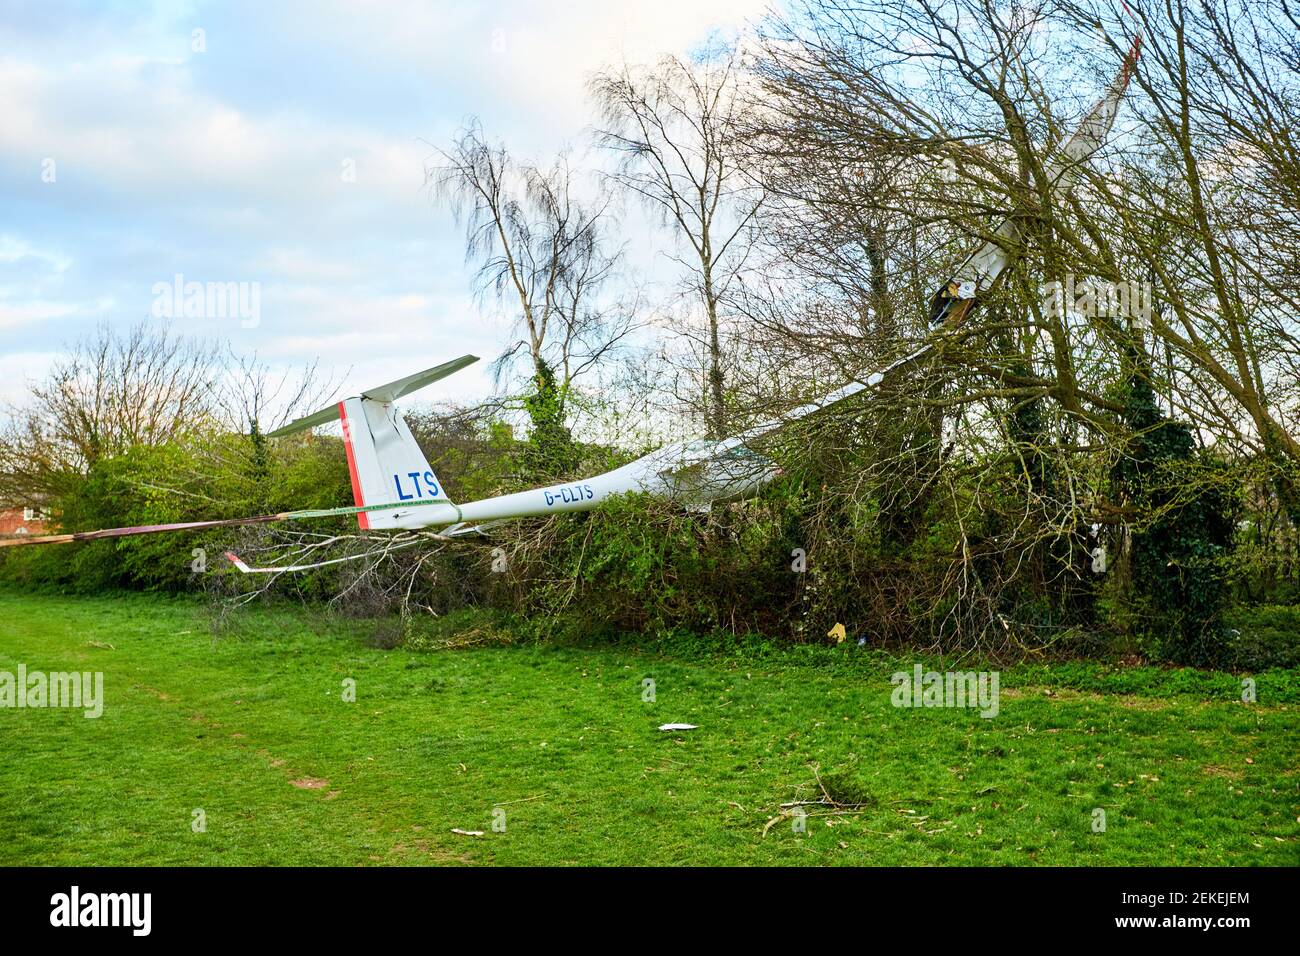 Vista general de un planeador Schempp-Hirth Arcus T después de que se estrelló en los árboles en el Parque de Caversfield cerca de Bicester. El piloto escapó sin heridos. Foto de stock